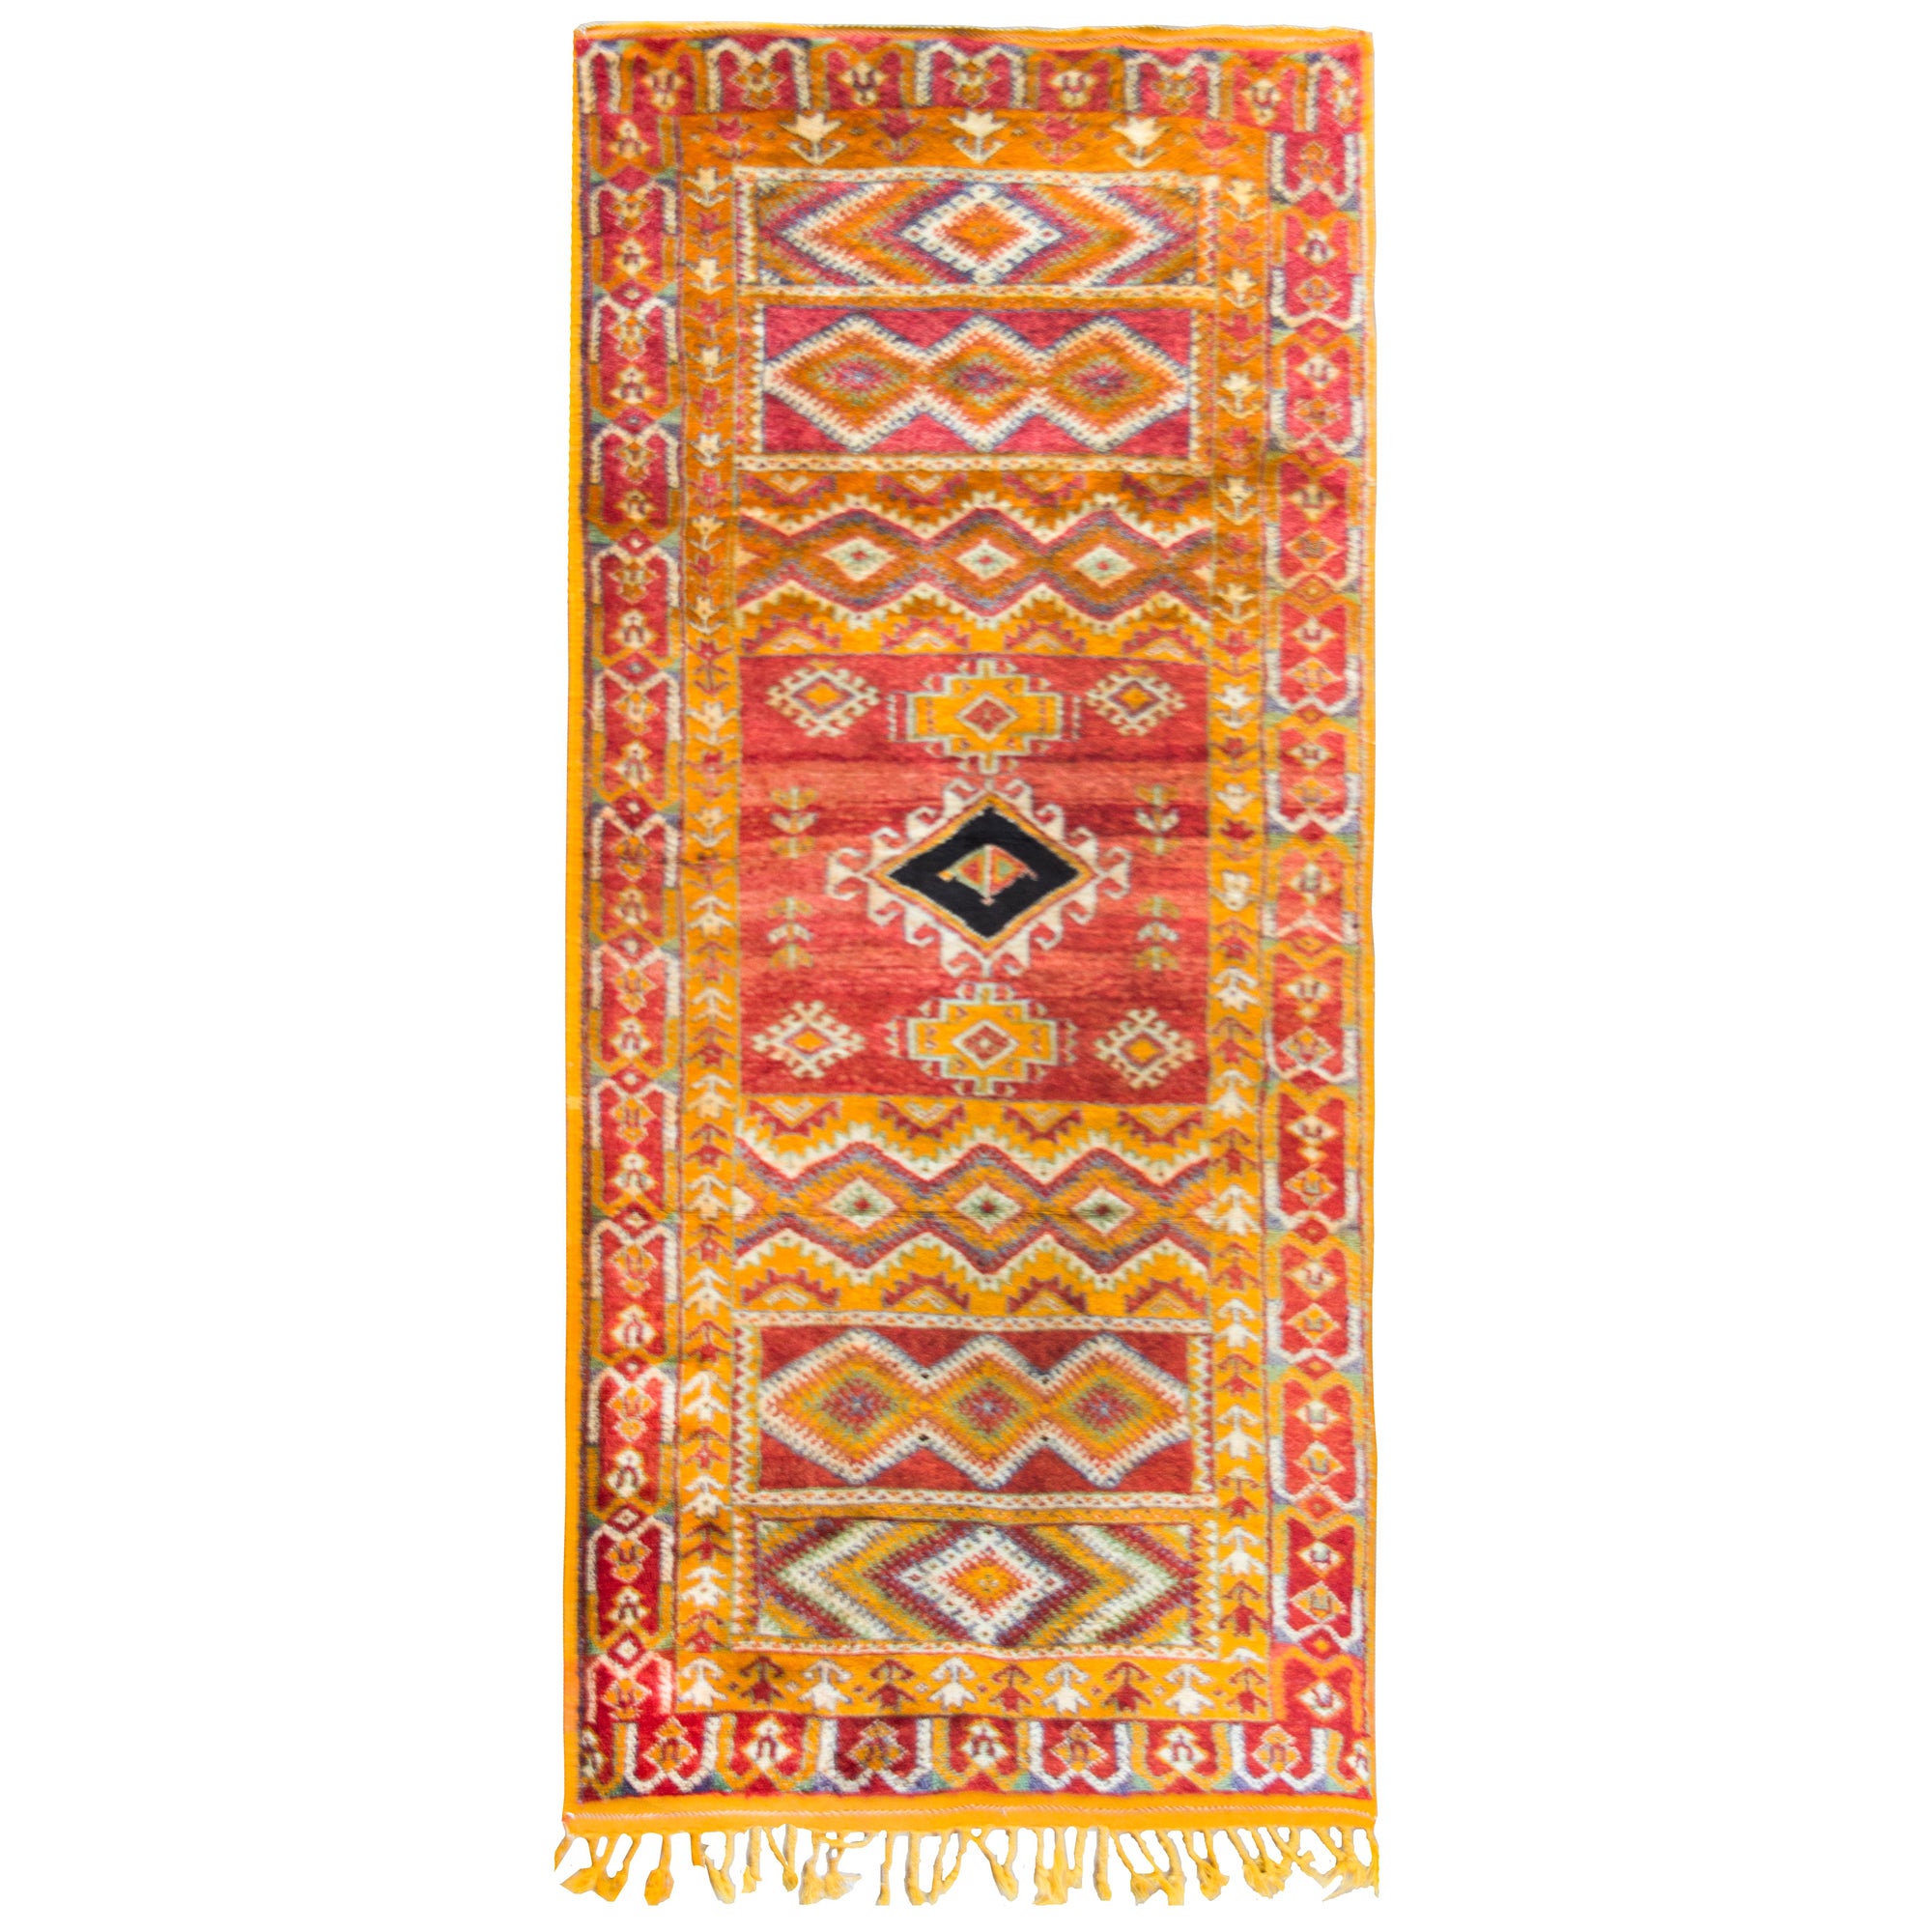 Marokkanischer Teppich des 20. Jahrhunderts